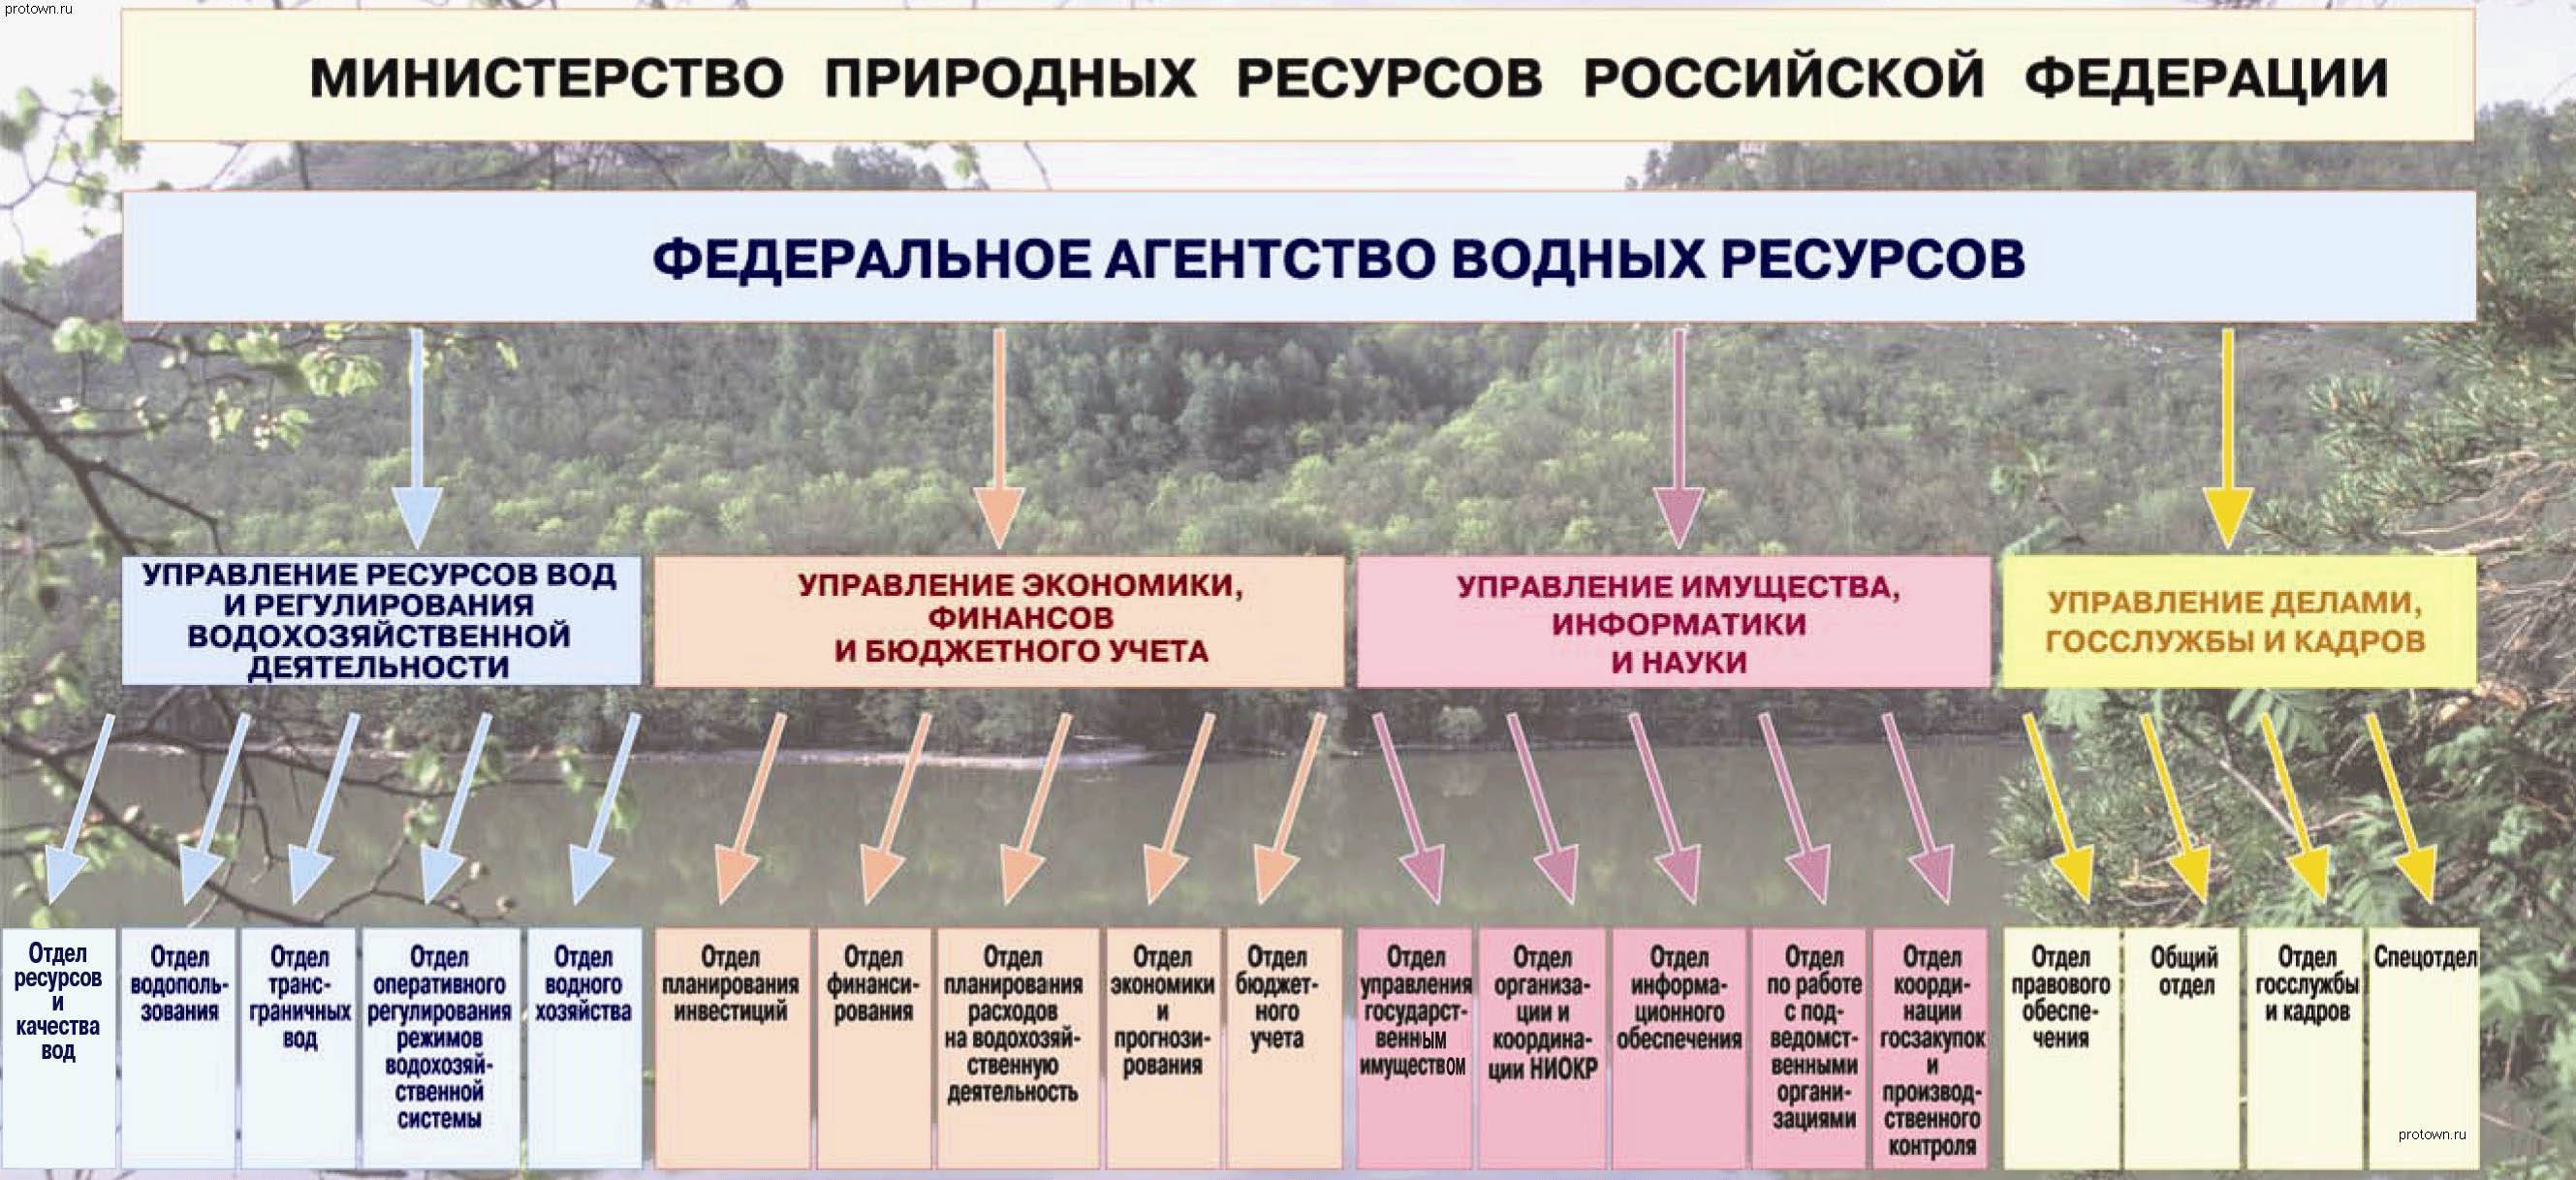 Минприроды РФ федеральные агентства водных ресурсов